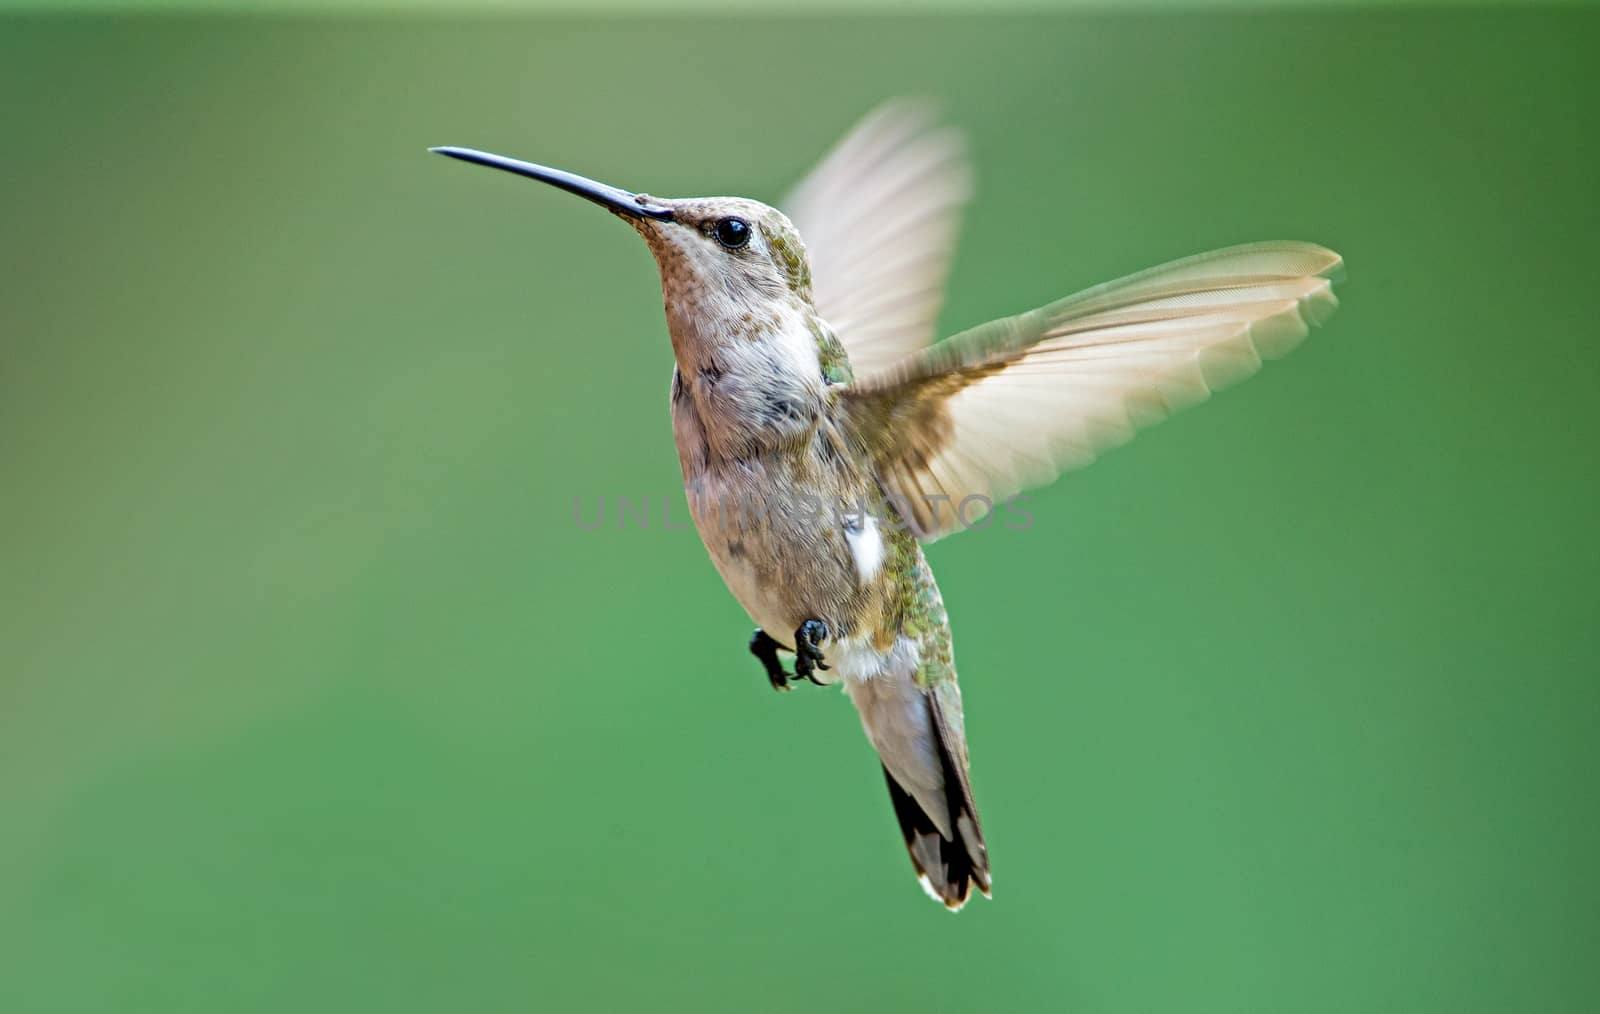 Black-chinned hummingbird by thomas_males